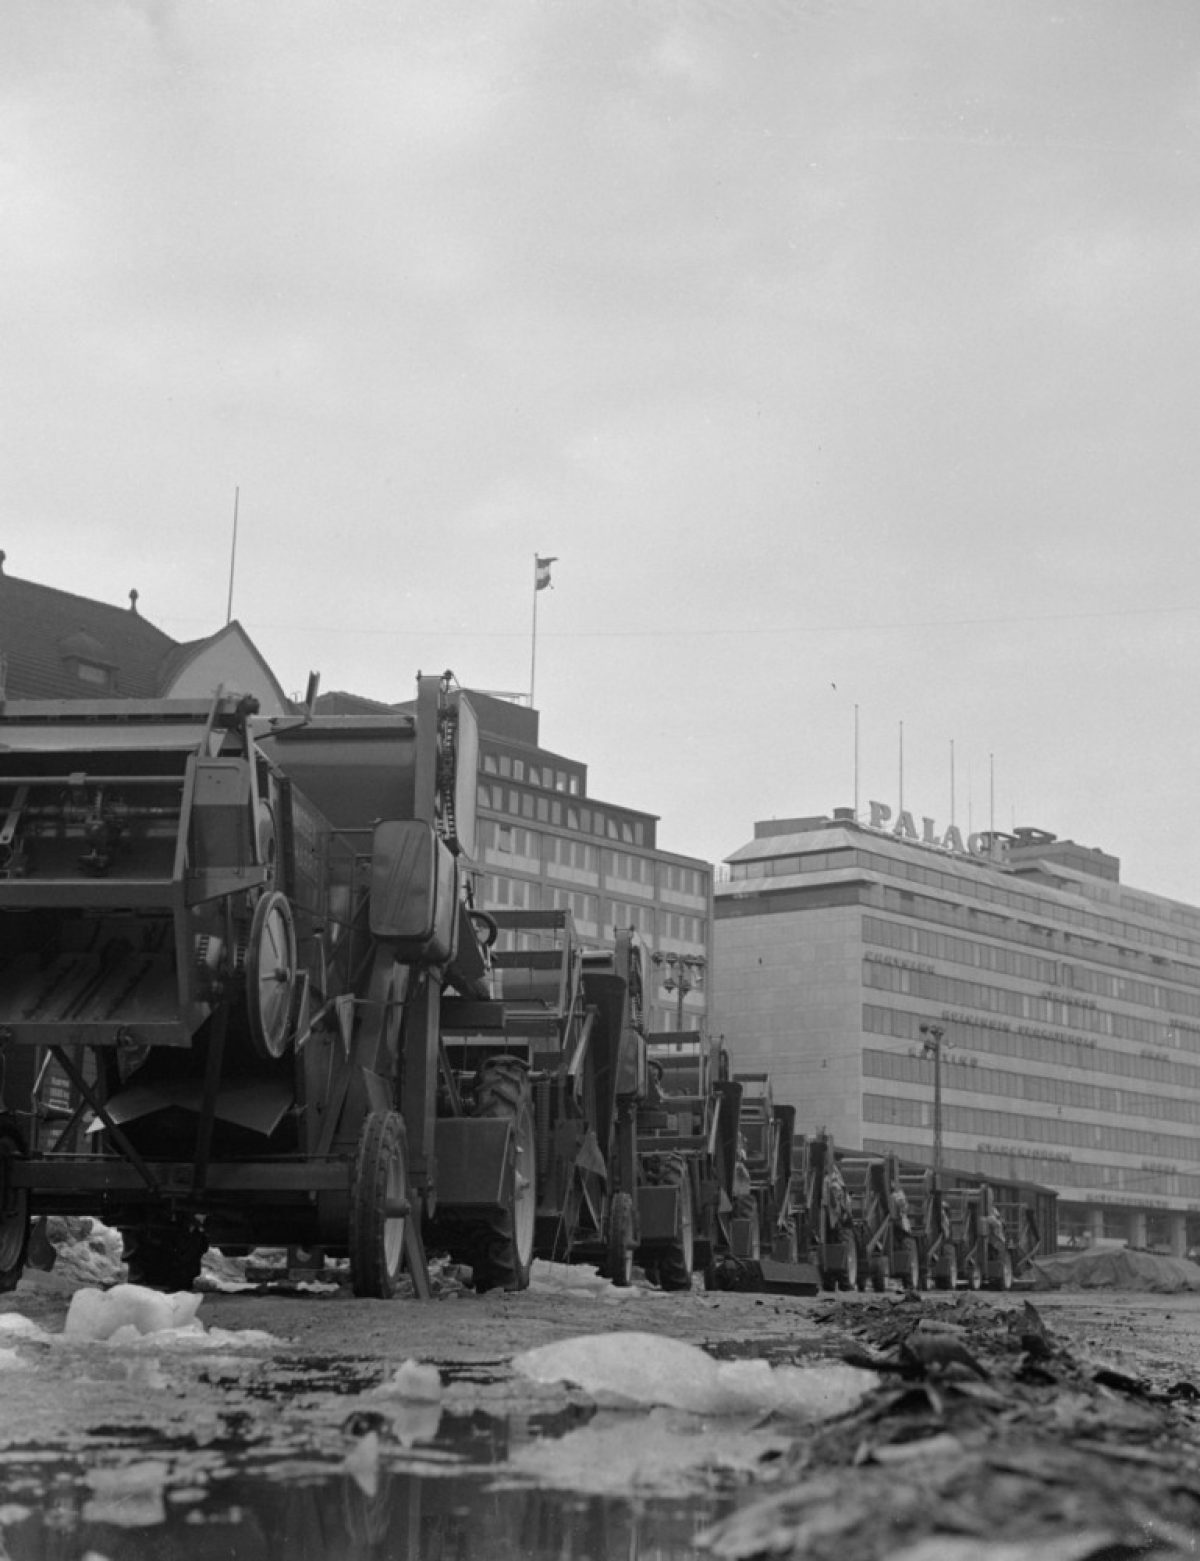 Imported combine harvesters in Eteläranta, Helsinki, 1956. Photo: Erkki Voutilainen / Maaseudun Tulevaisuus / Press Photo Archive JOKA / Finnish Heritage Agency